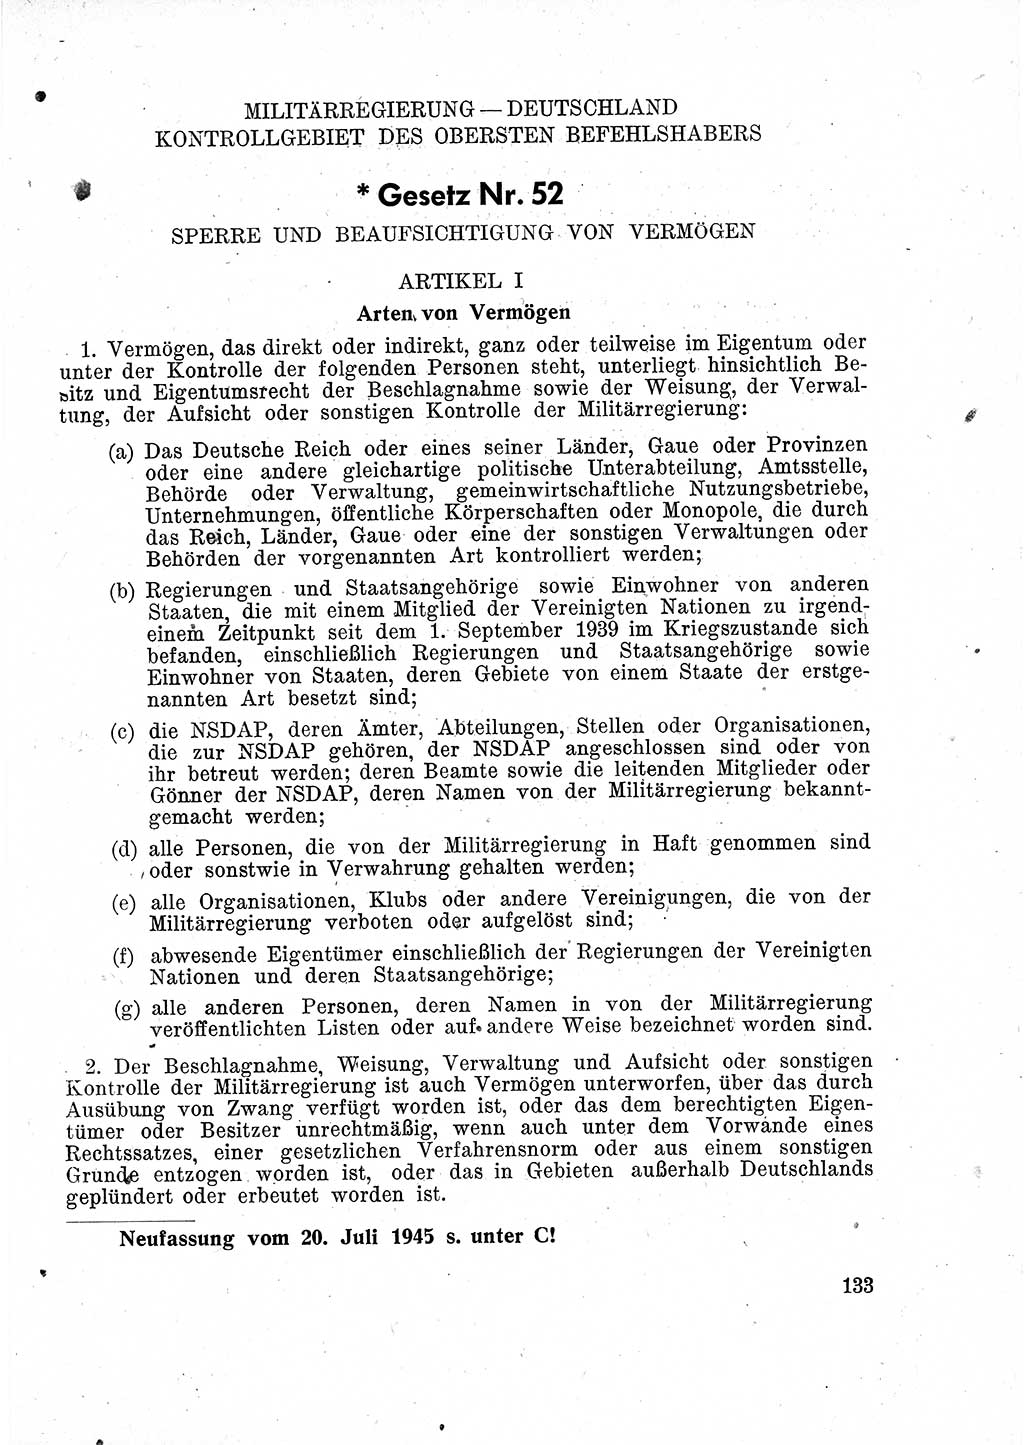 Das Recht der Besatzungsmacht (Deutschland), Proklamationen, Deklerationen, Verordnungen, Gesetze und Bekanntmachungen 1947, Seite 133 (R. Bes. Dtl. 1947, S. 133)